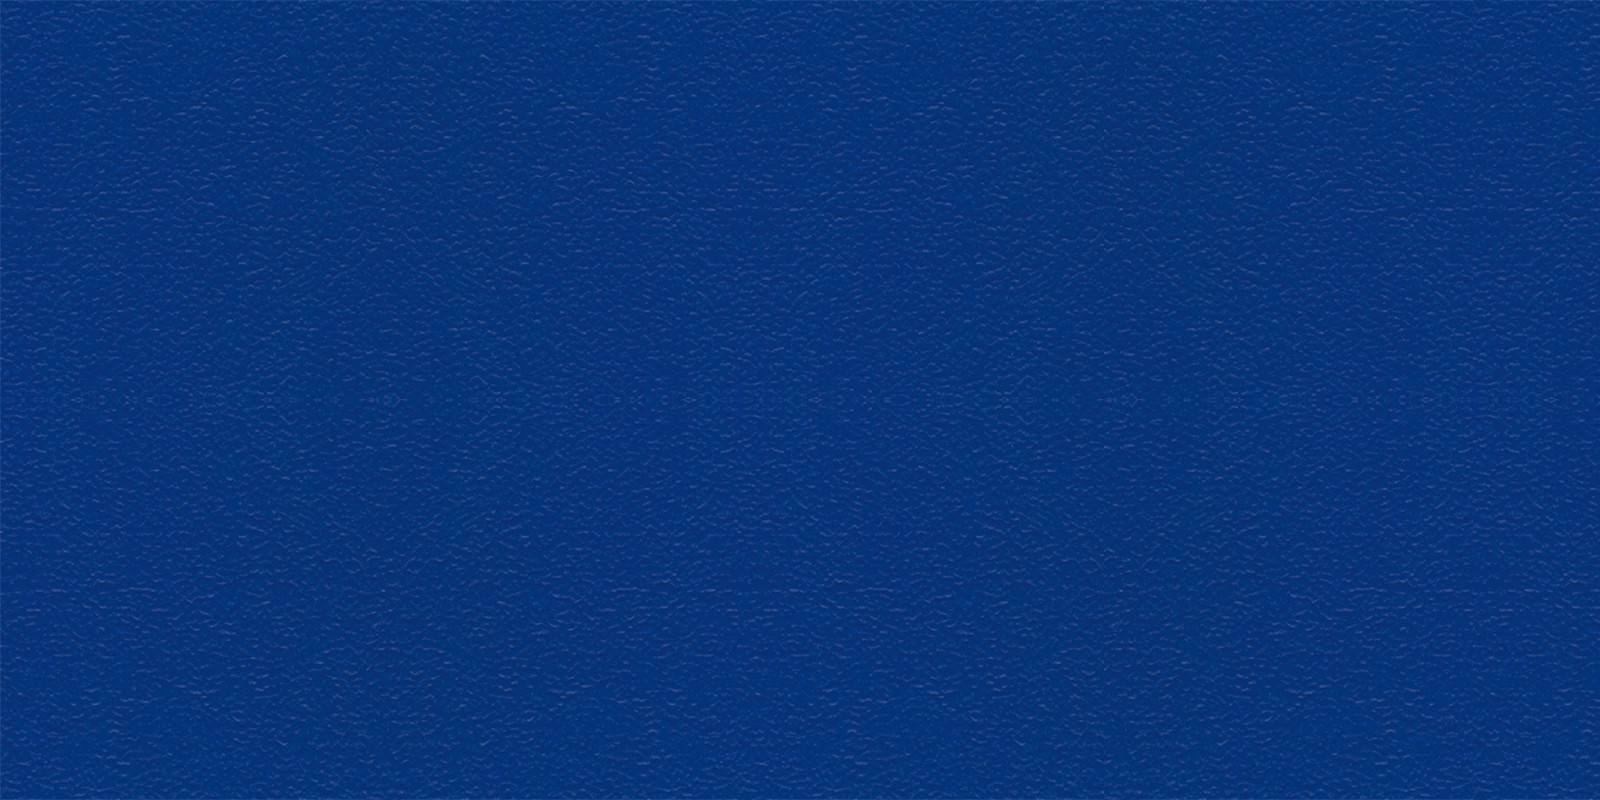 Gentian Blue